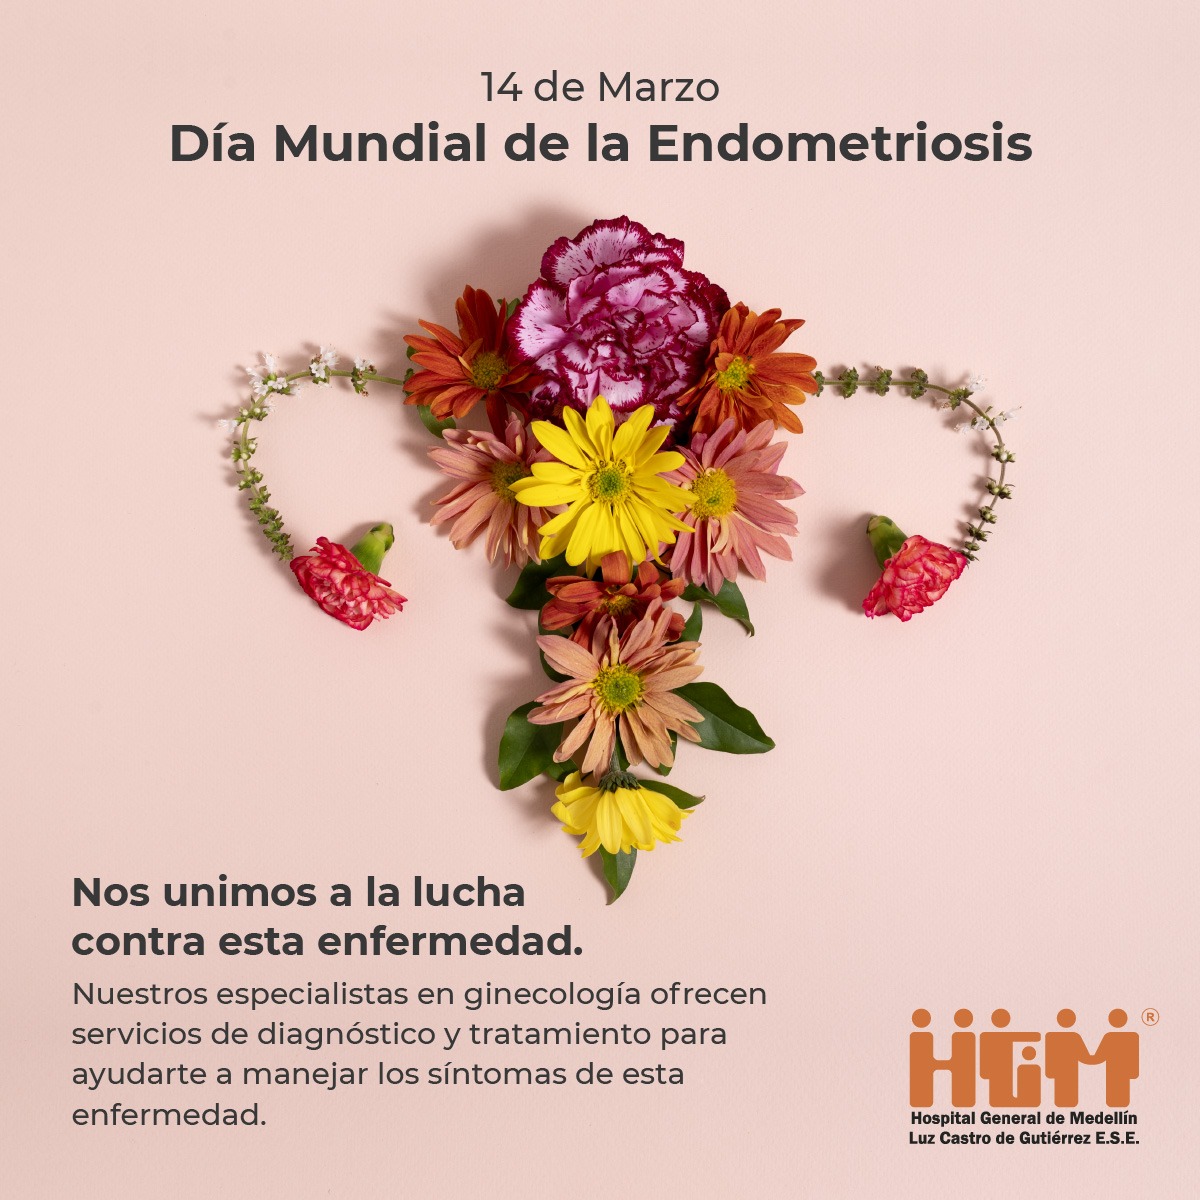 Día Mundial de la Endometriosis